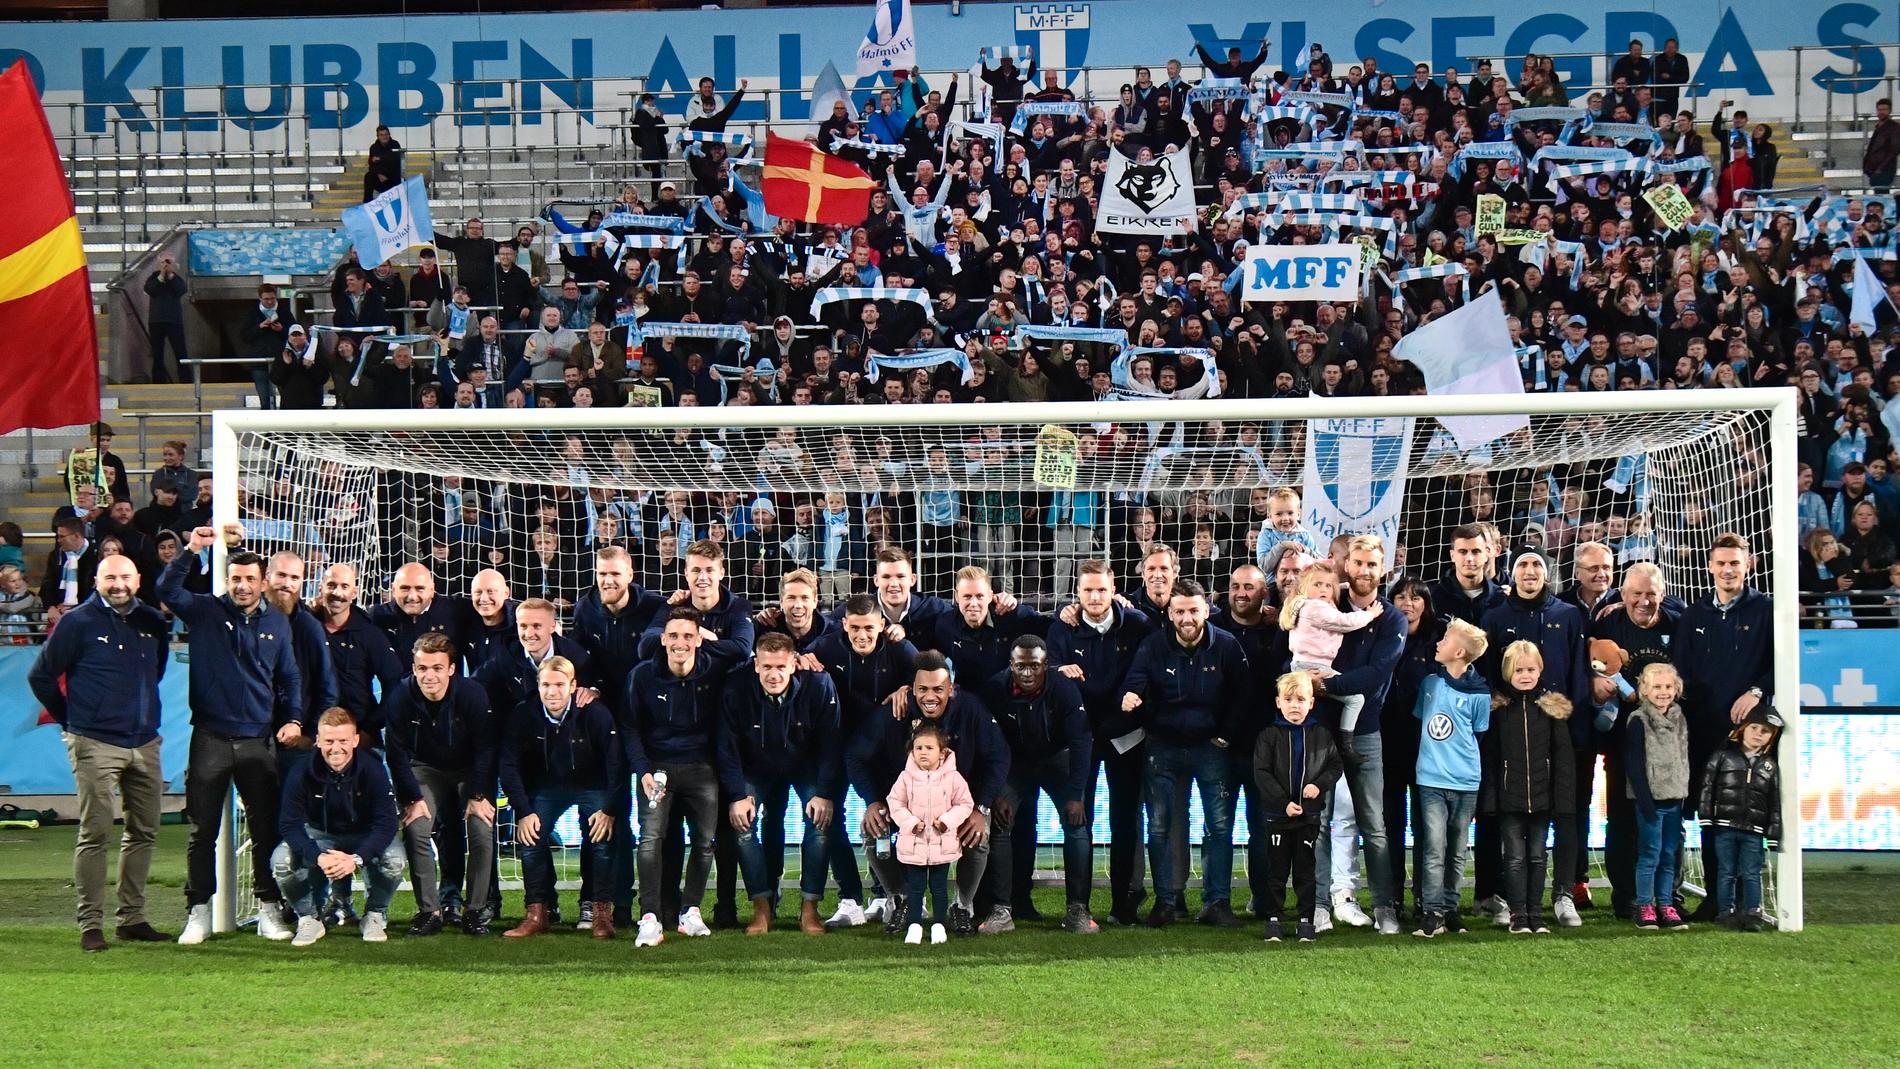 Så här såg det ut när Malmö FF firade sitt senaste SM-guld 2017 med sina supportrar på hemmaarenan, dagen efter att titeln säkrats borta mot IFK Norrköping. Arkivbild.